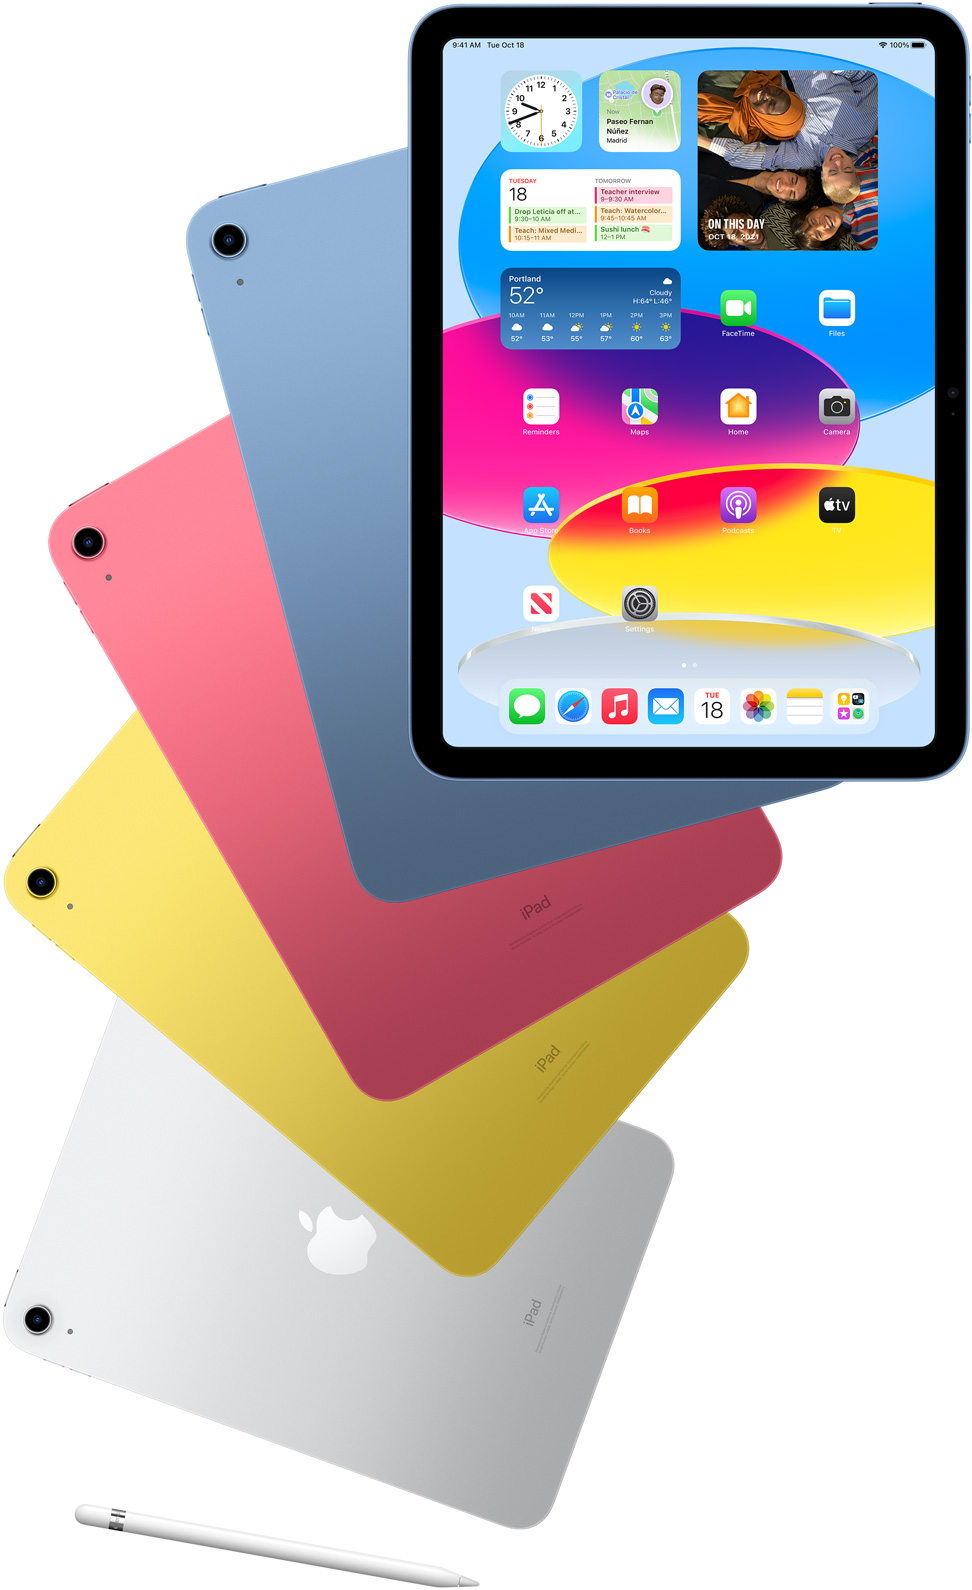 Вид спереди iPad показывает главный экран, за которым расположены синие, розовые, желтые и серебристые iPad, расположенные сзади. Apple Pencil находится рядом с расположенными моделями iPad.